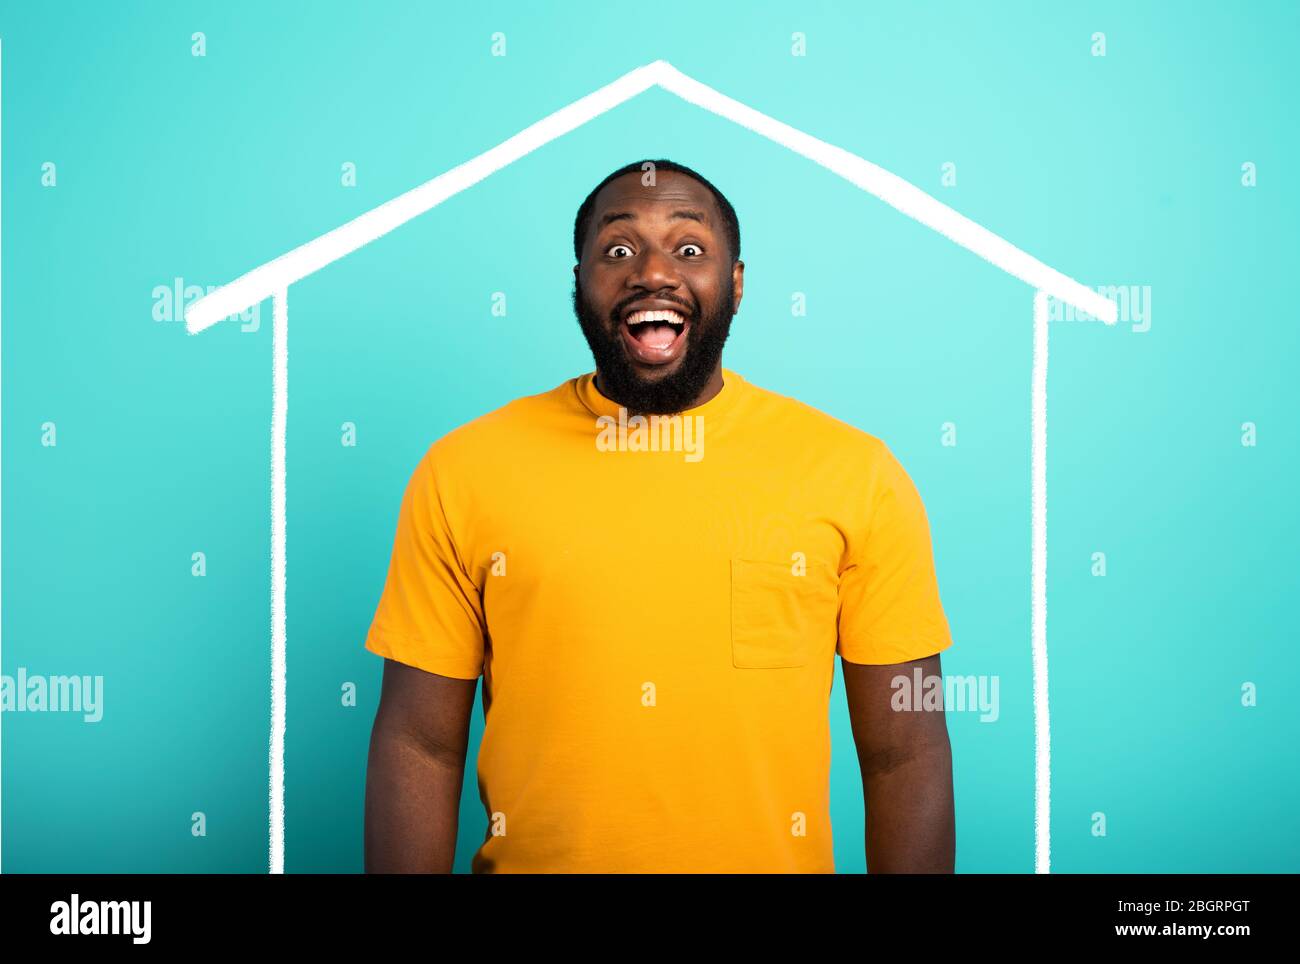 Der Mensch ist erstaunt, ein Haus gekauft zu haben. Cyanfarbener Hintergrund. Stockfoto